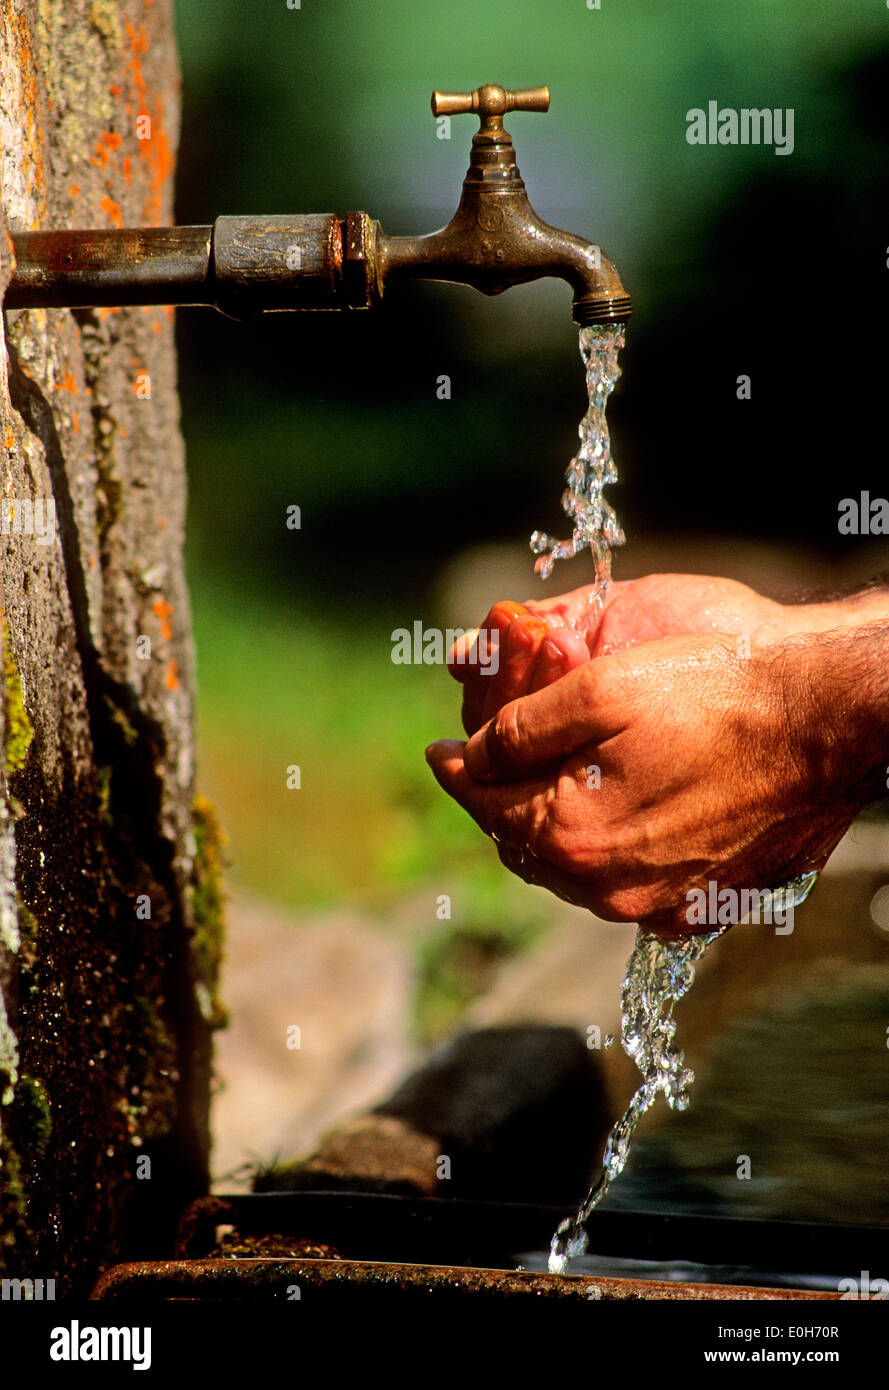 Se laver les mains à un robinet à l'extérieur dans le jardin Banque D'Images